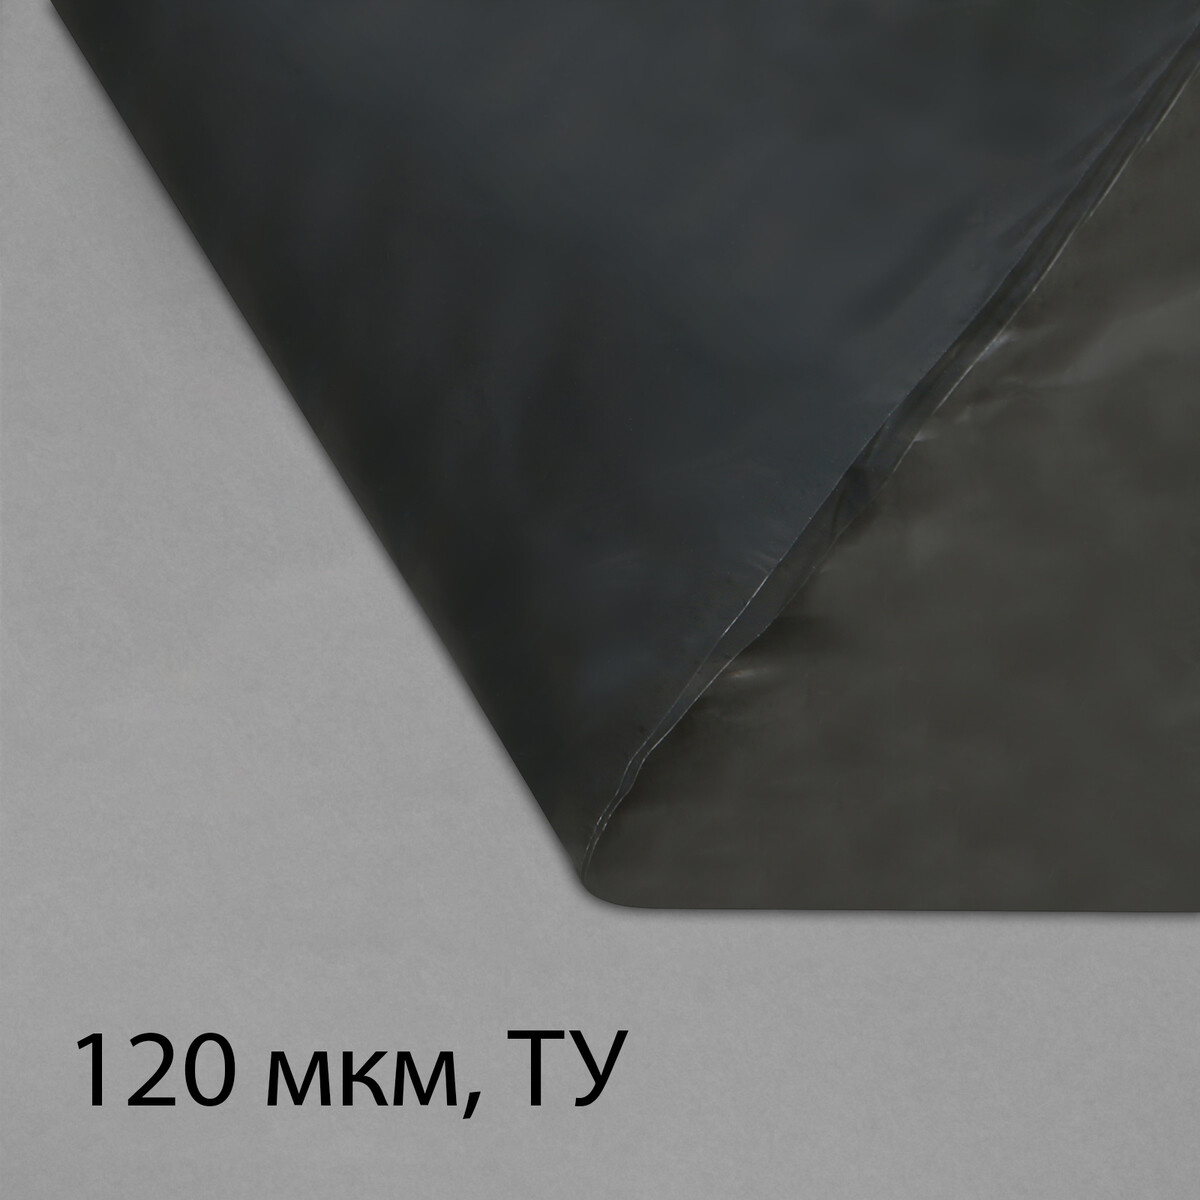 Пленка полиэтиленовая, техническая, толщина 120 мкм, 5 × 3 м, рукав (1,5 м × 2), черная, 2 сорт, эконом 50 % пленка полиэтиленовая прозрачная рукав 1 5 × 2 м толщина 60 мкм 10 × 3 м эконом 50%